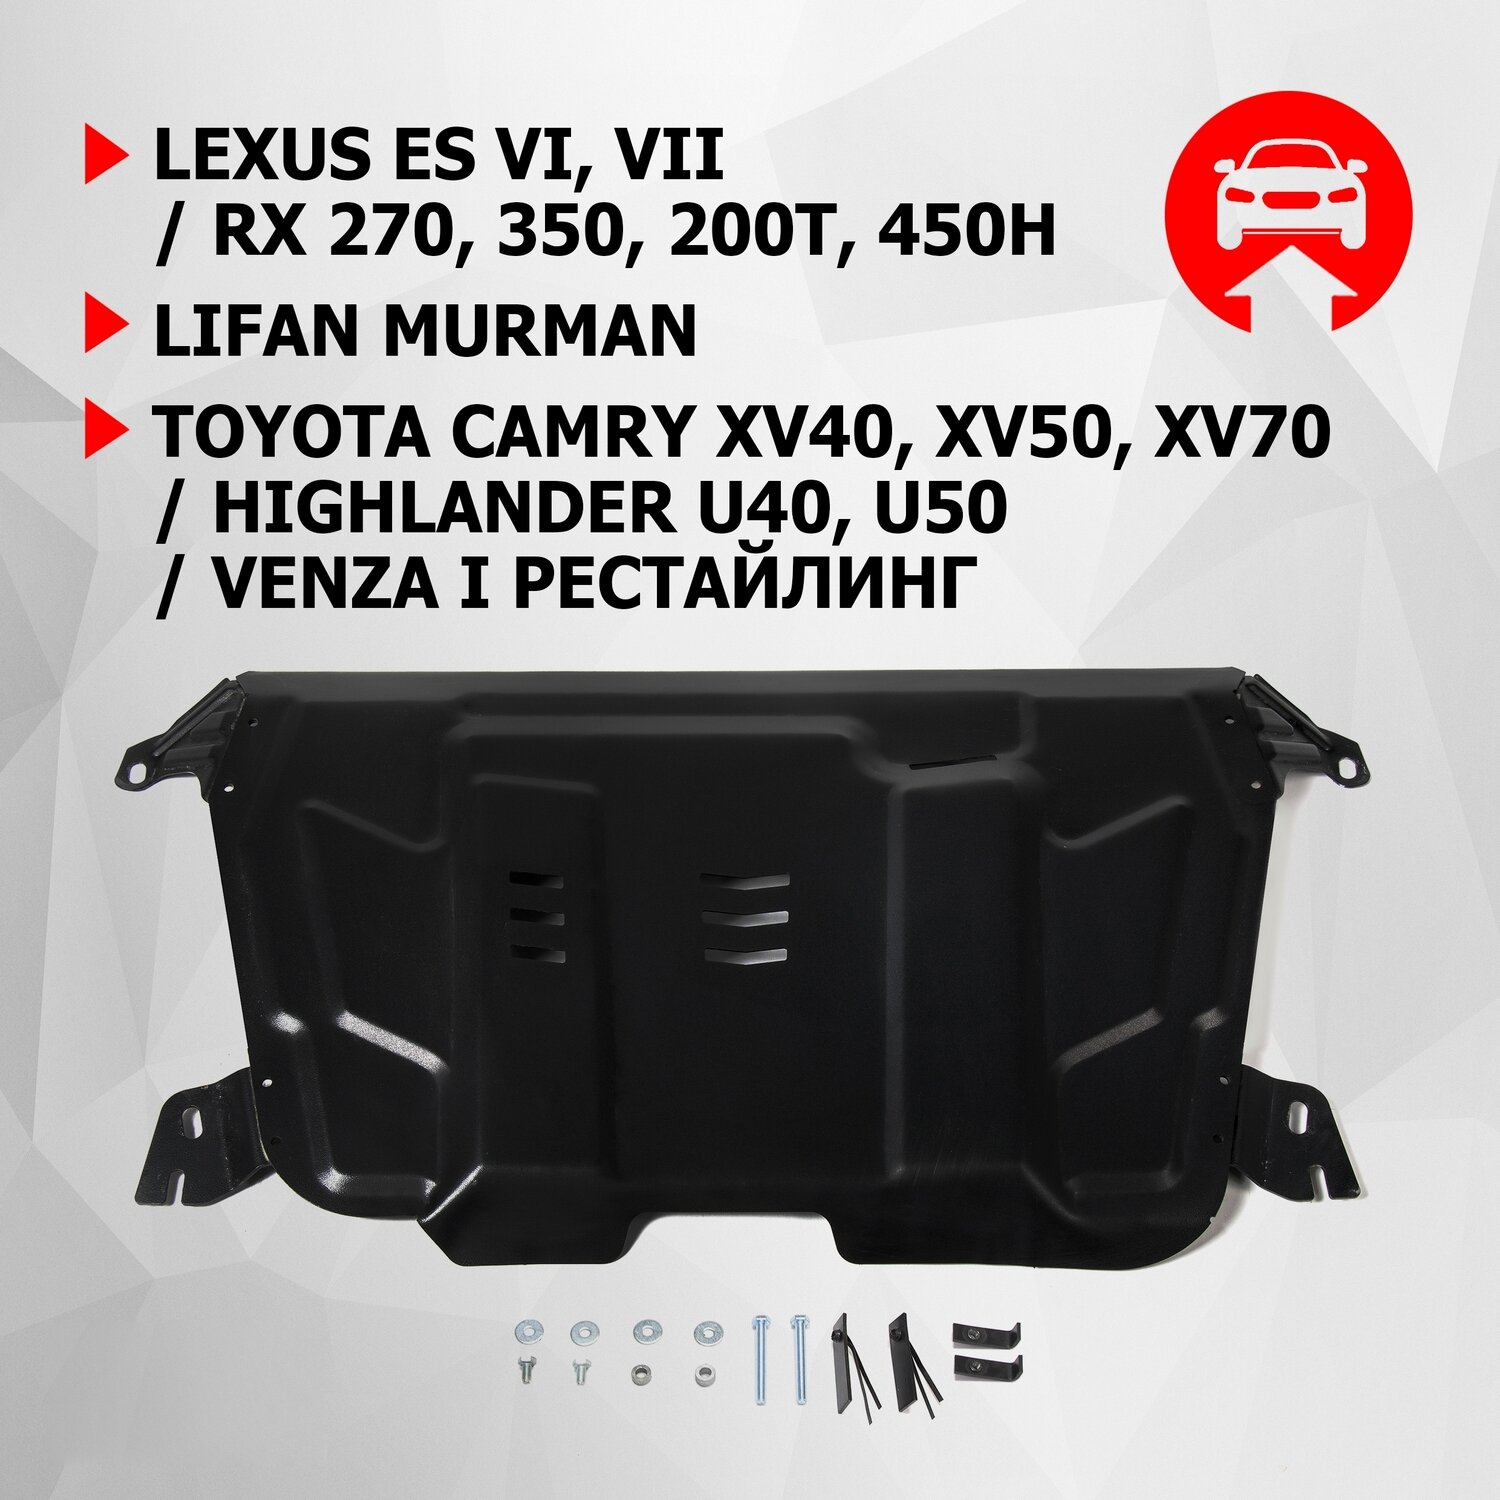 ЗК и КПП АвтоБроня Lexus ES 2012-/RX 2008-/Lifan Murman МКПП 2017-/Toyota Camry 2006-/Highlander U40, U50 2010-2020/Venza I 2012-2016, 111.09519.1